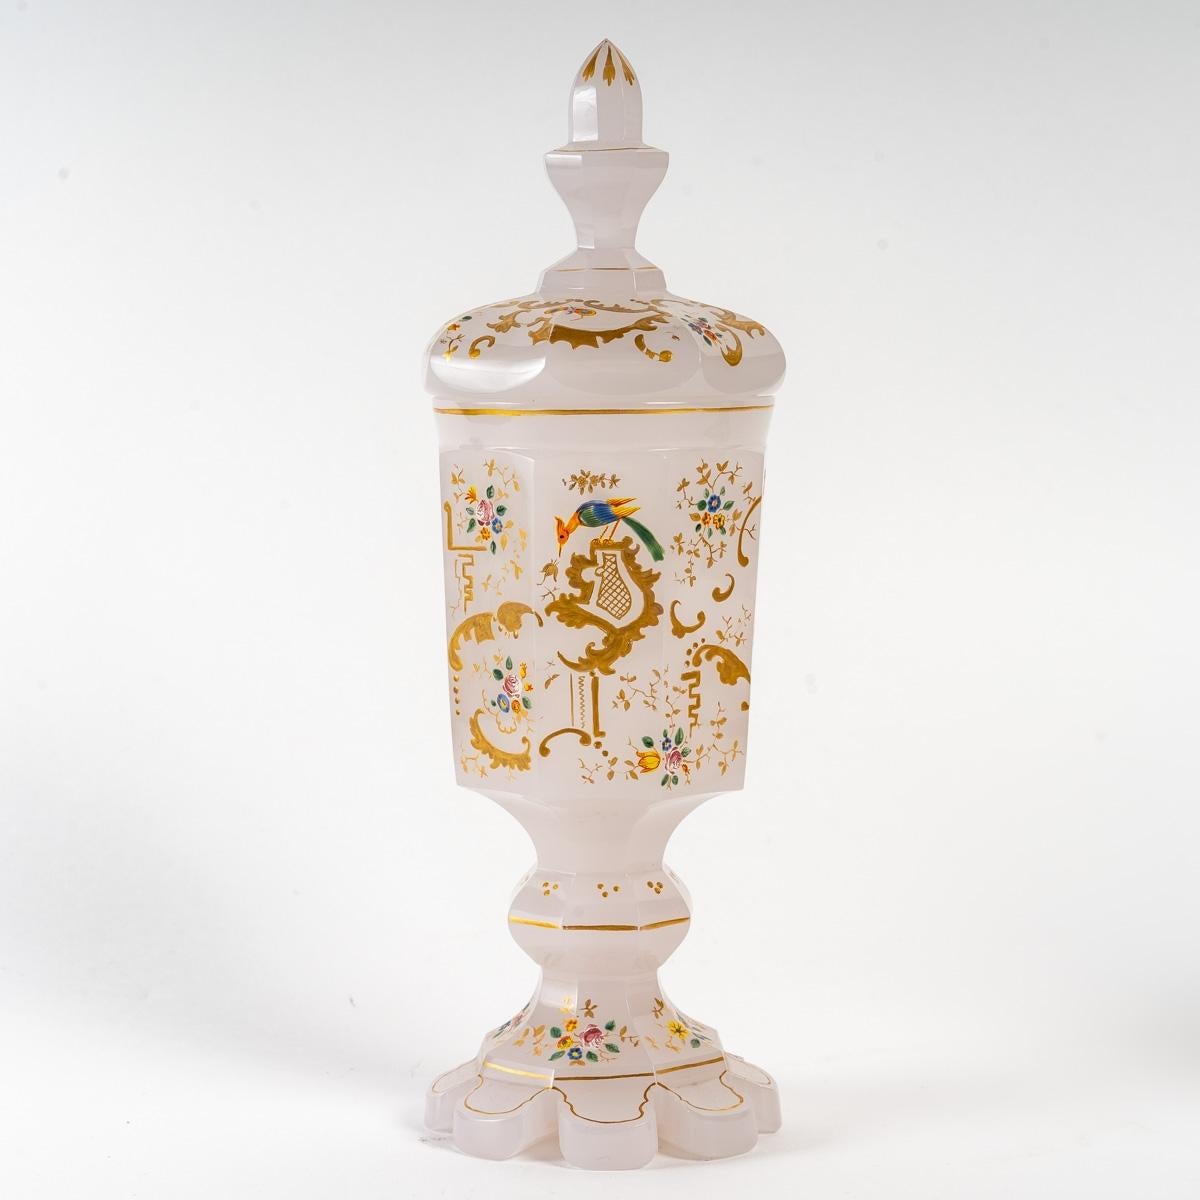 White opaline goblet, 19th century
19th century enamelled white opaline goblet.
Measures: H: 26 cm, d: 9 cm.
 